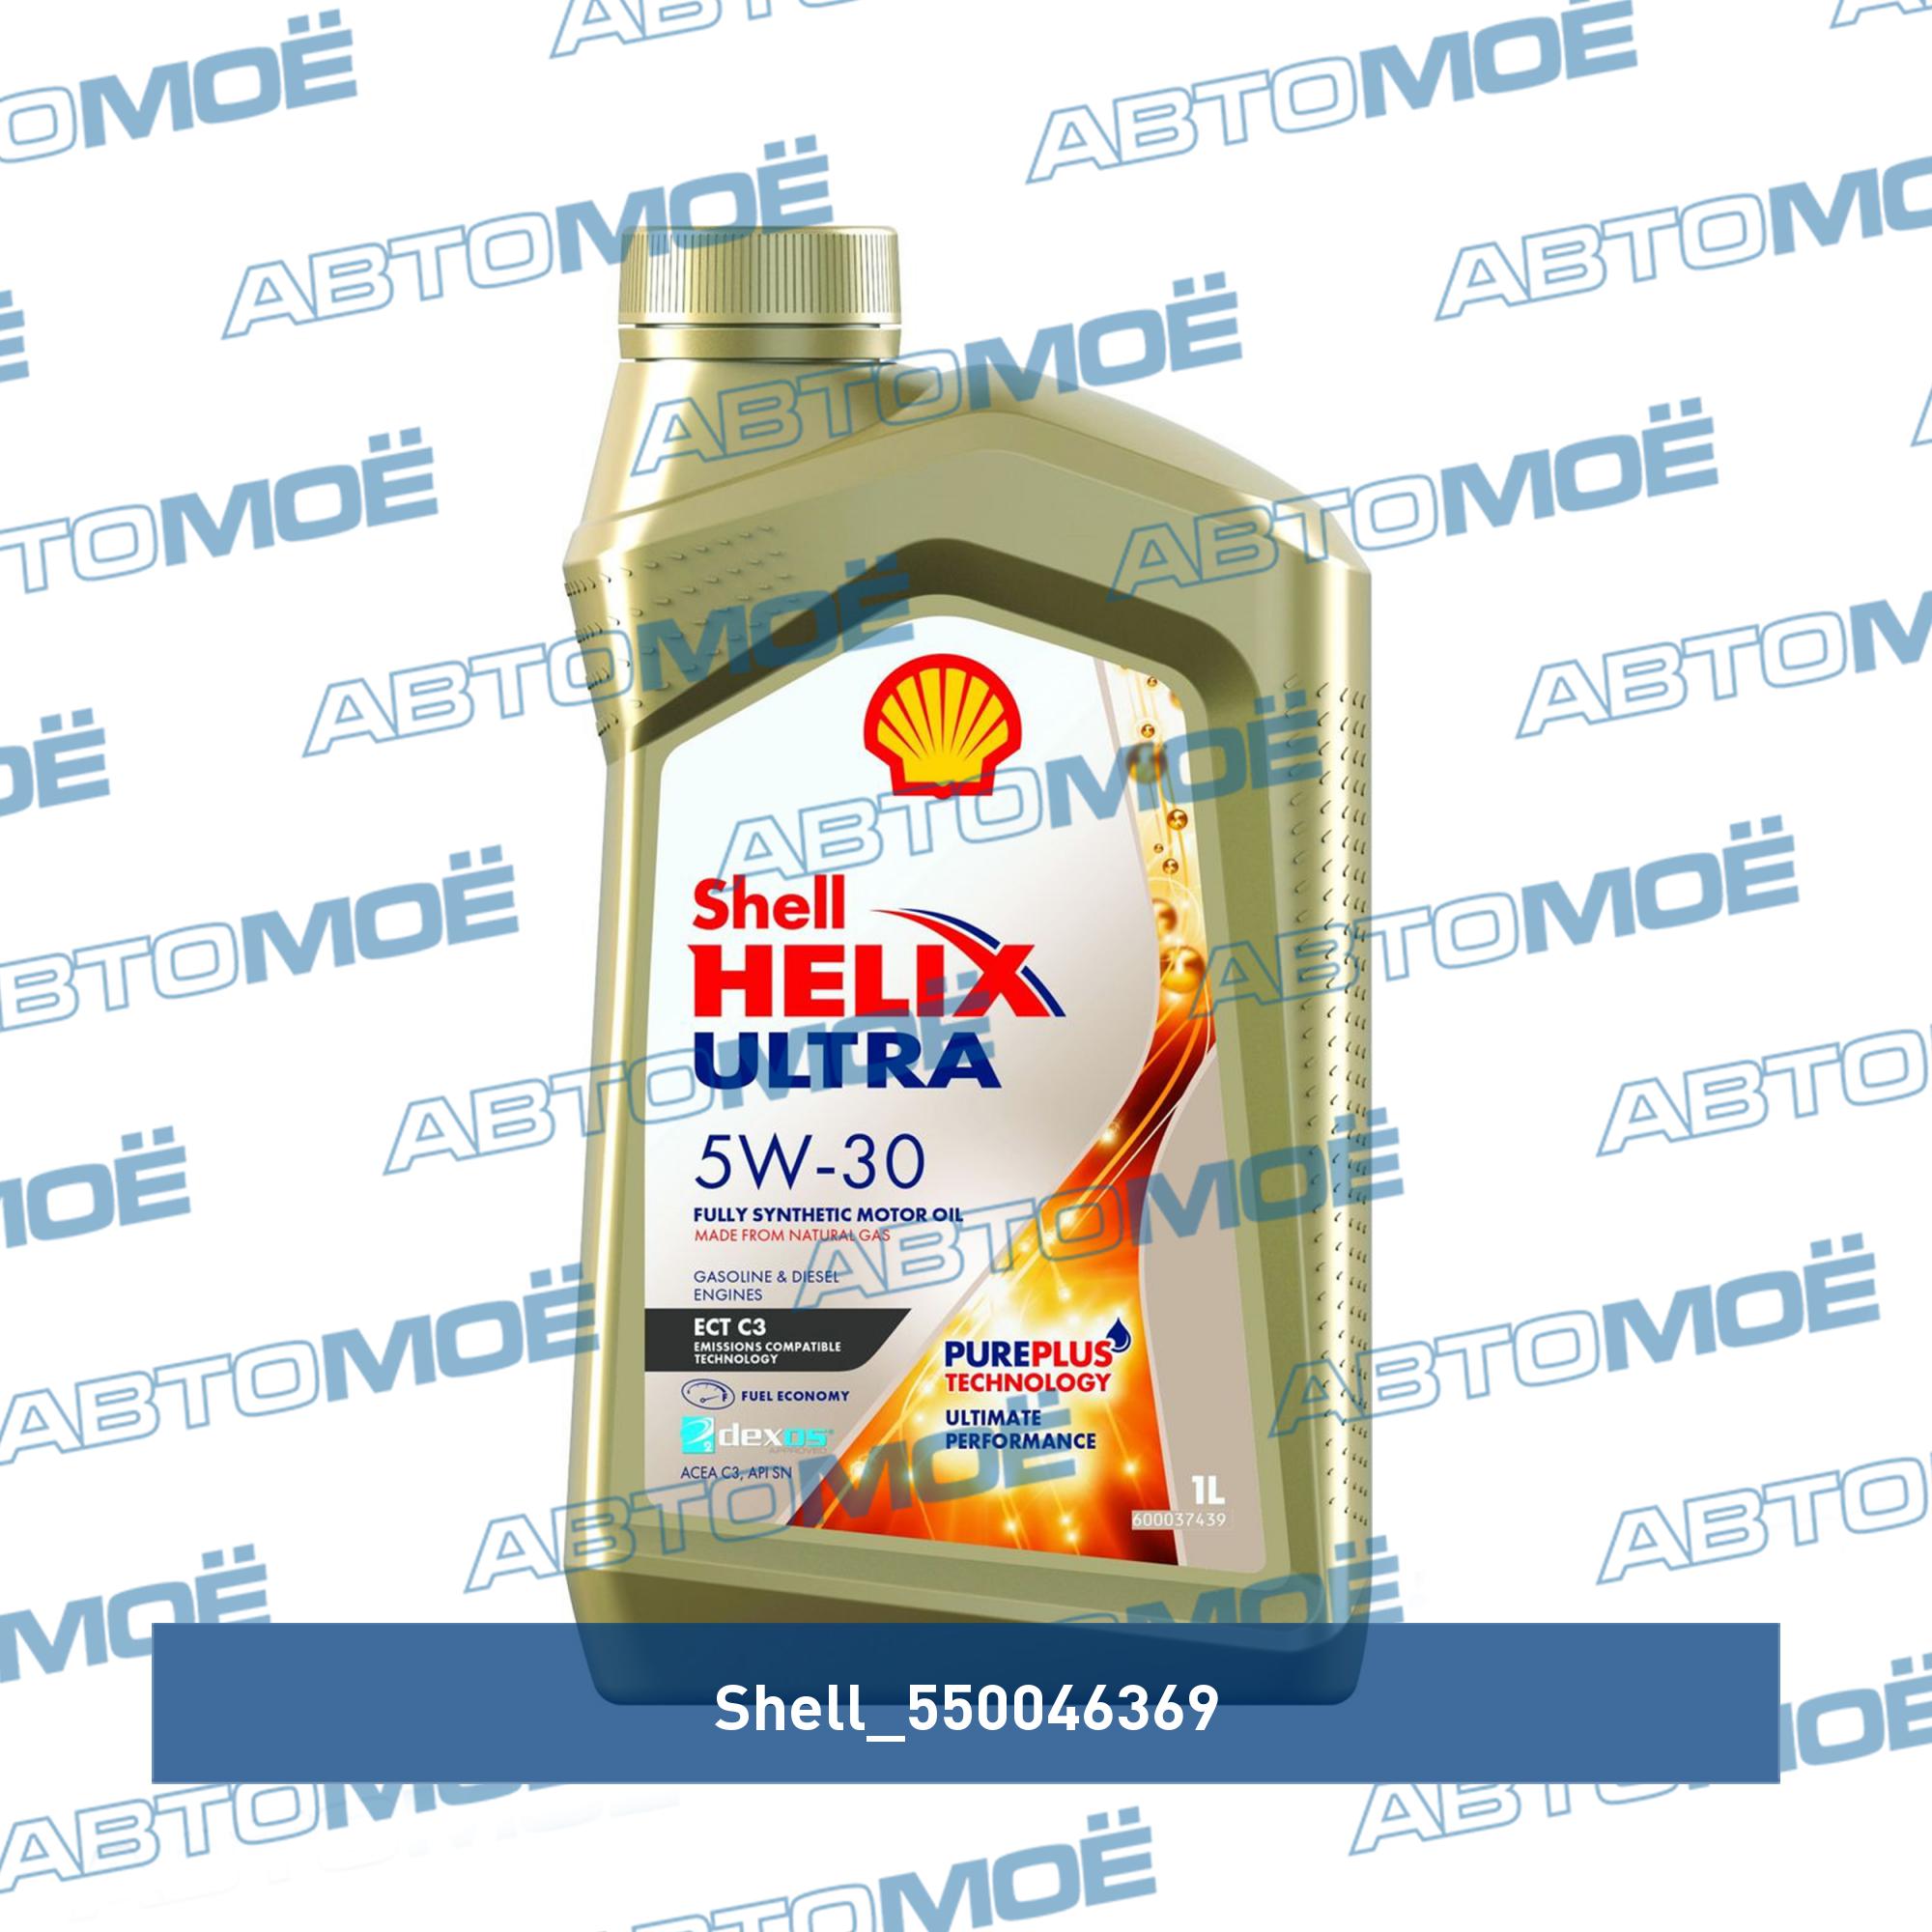  моторное Shell helix ultra ECT 5W-30 1л 550046369 Shell  в .